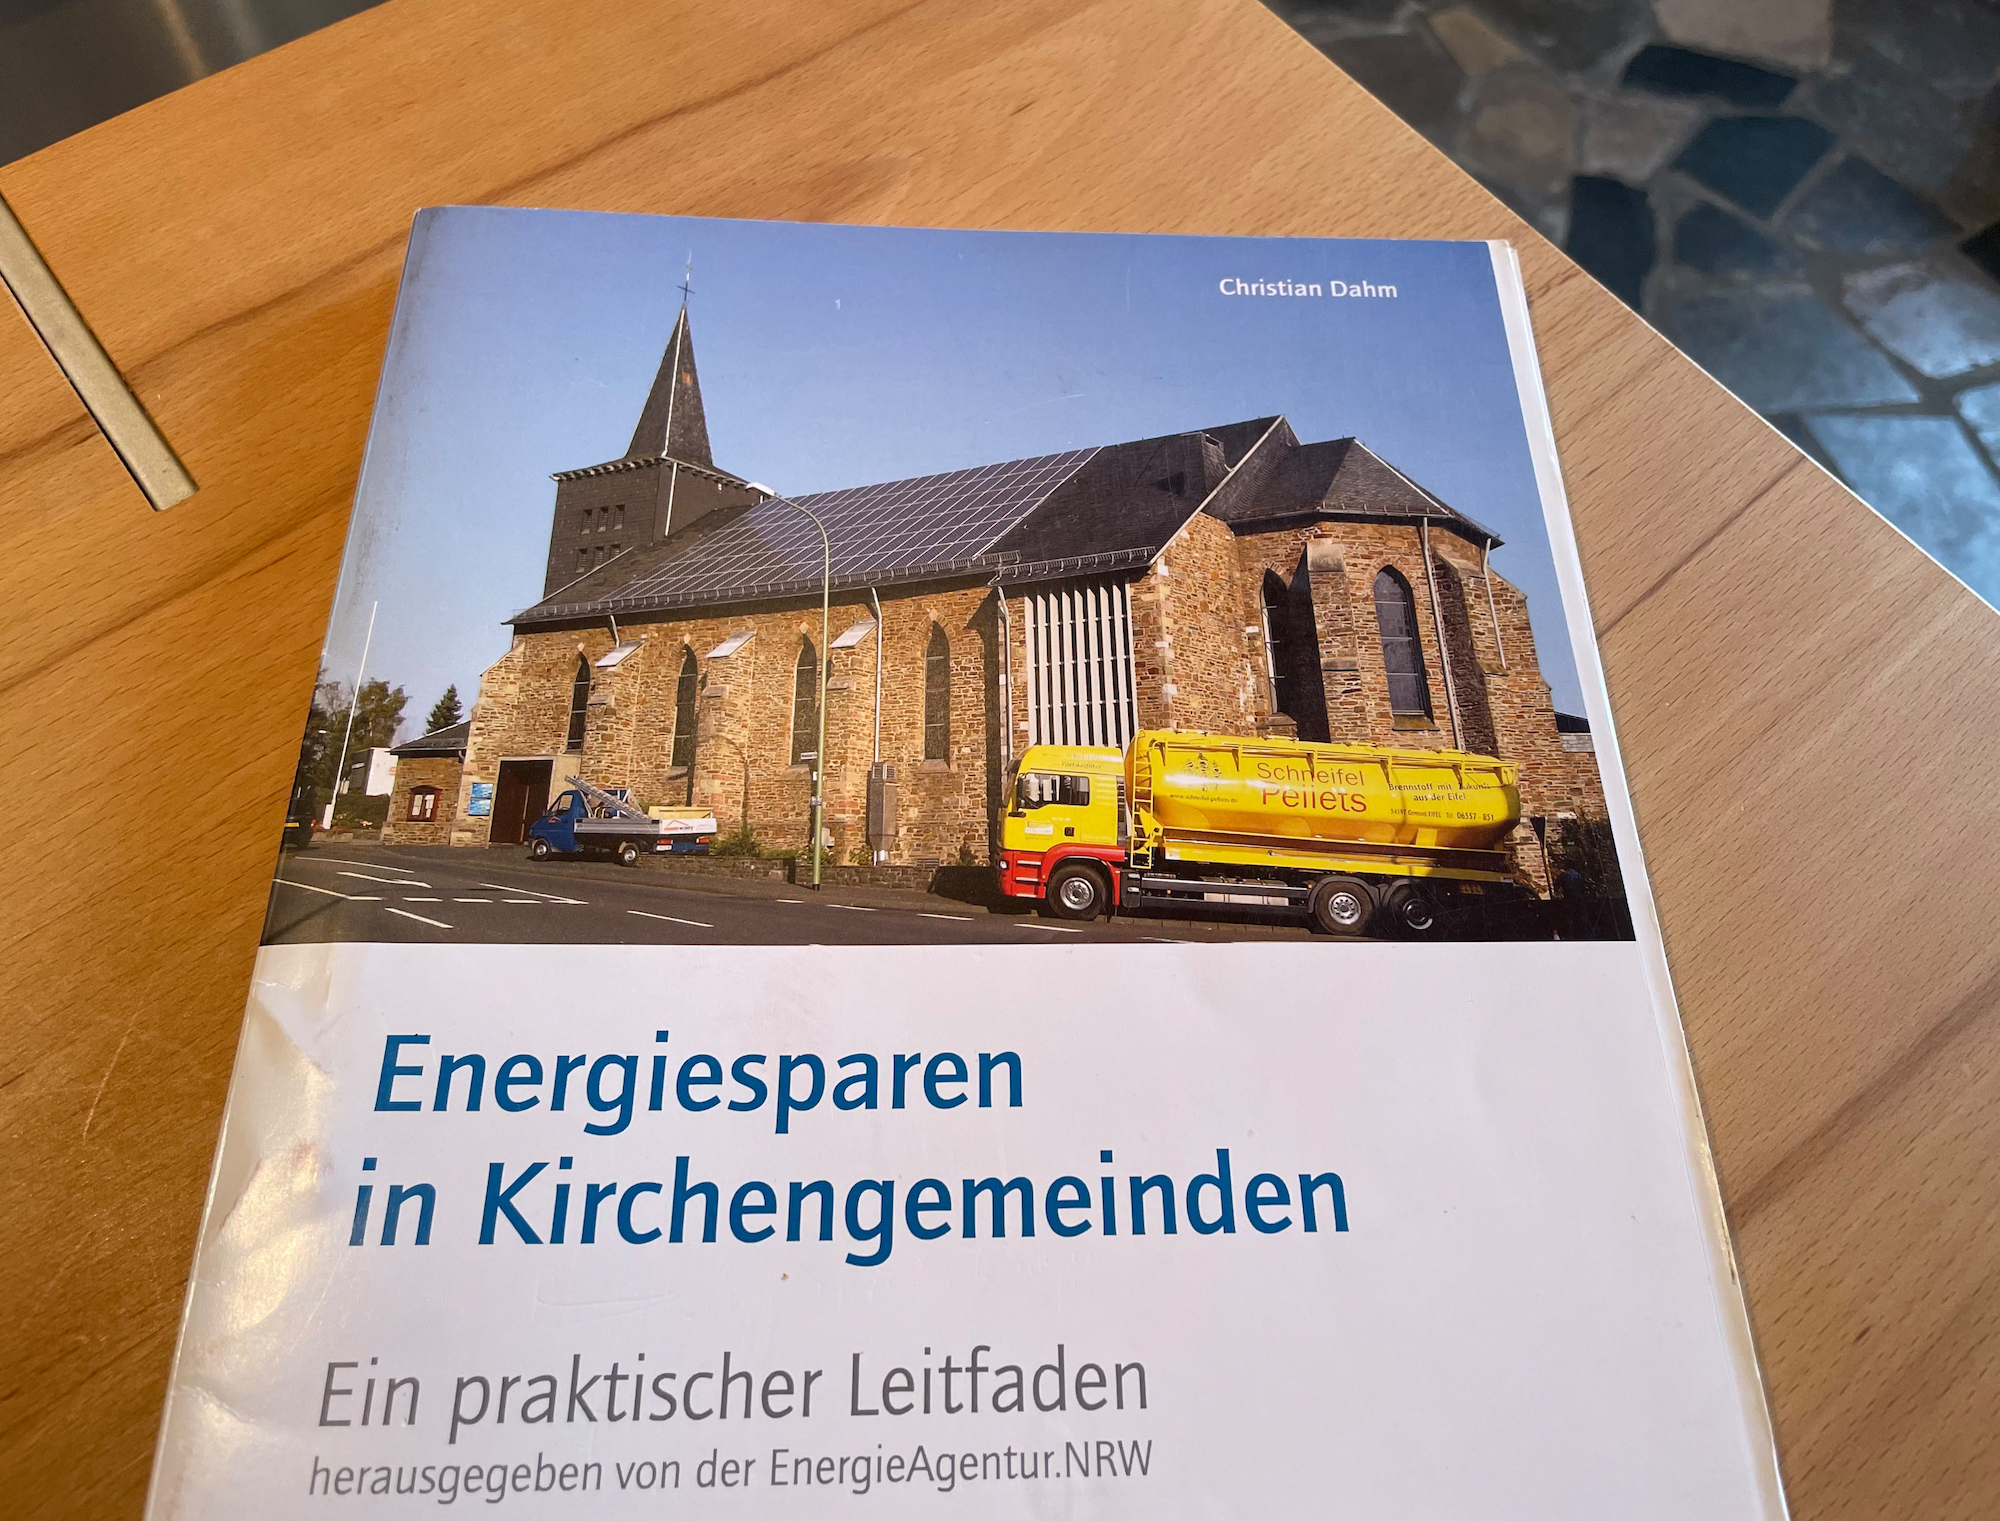 Die Kirche St. Hubertus auf dem Titel der Infobroschüre der Energie-Agentur NRW (c) Stephan Johnen